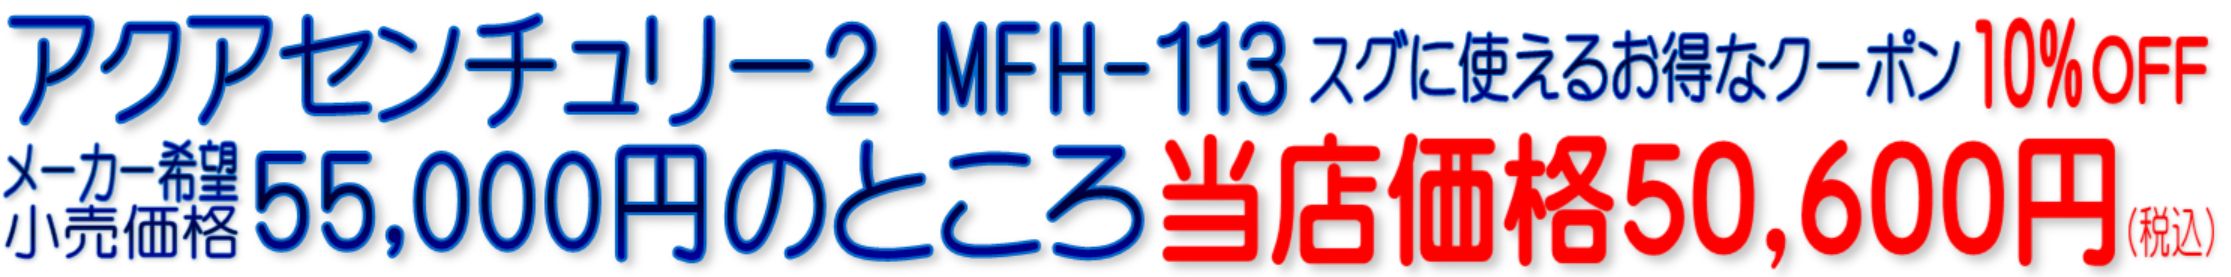 アクアセンチュリー2MFH-113